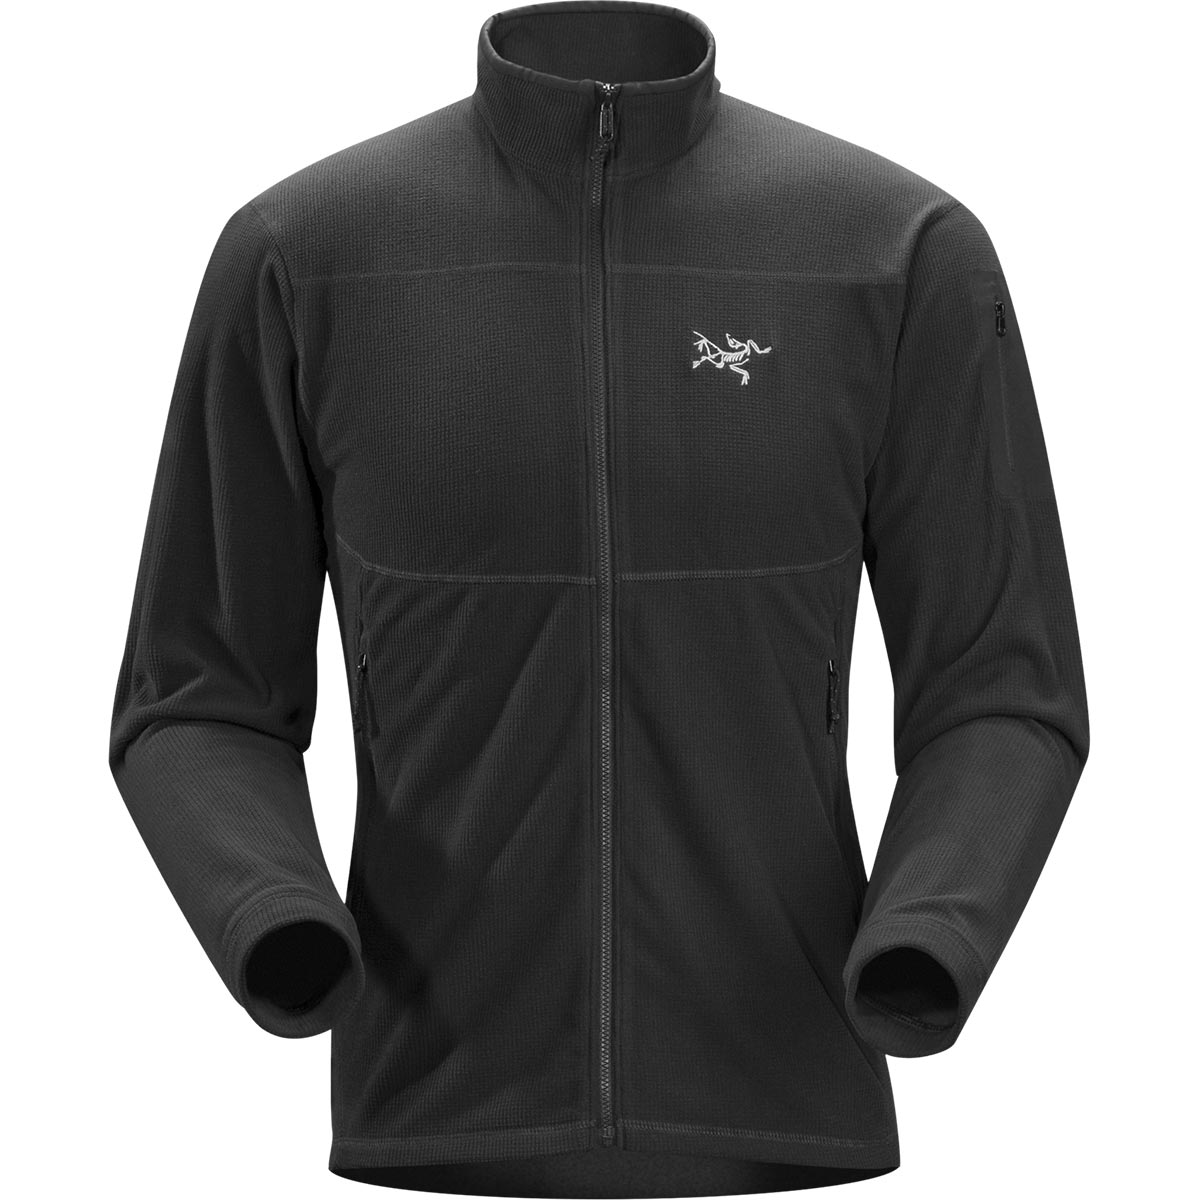 Arc'teryx Delta LT Jacket, men's, Fall 2018 colors of discontinued ...